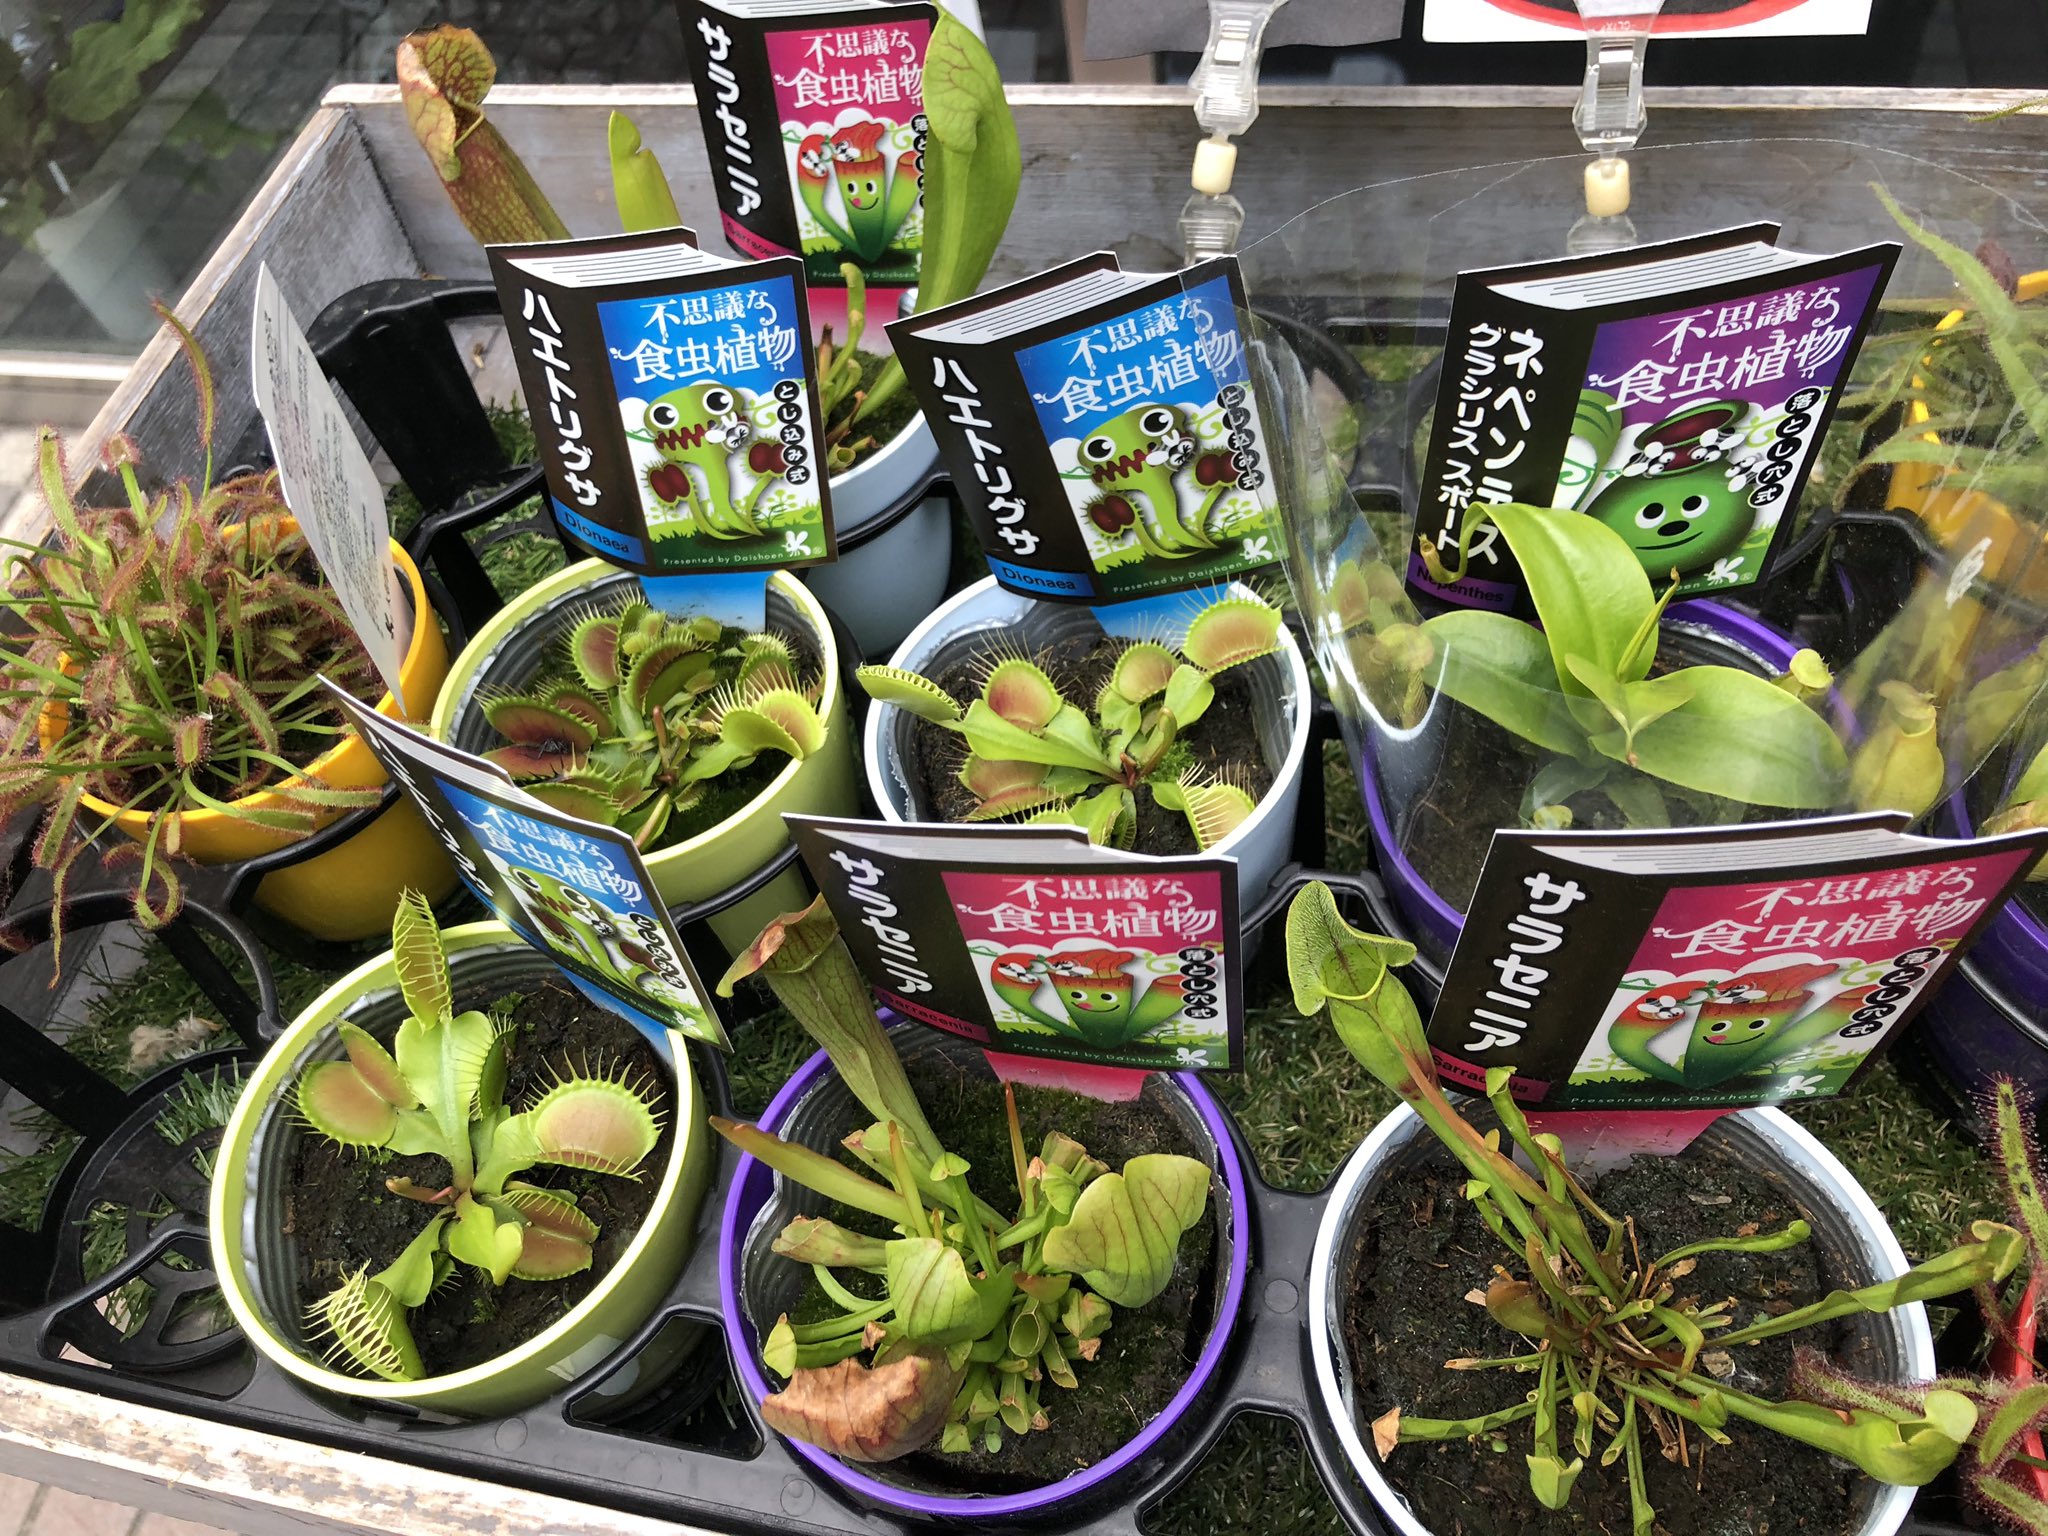 フルール若林 食虫植物販売してますよ 札幌ではイベント事が殆ど中止で微妙に季節感無い感じですが 確実に夏になって来てます 虫さんも出てくる季節です 食虫植物 札幌 販売 花屋 T Co Egz2sjtms9 Twitter